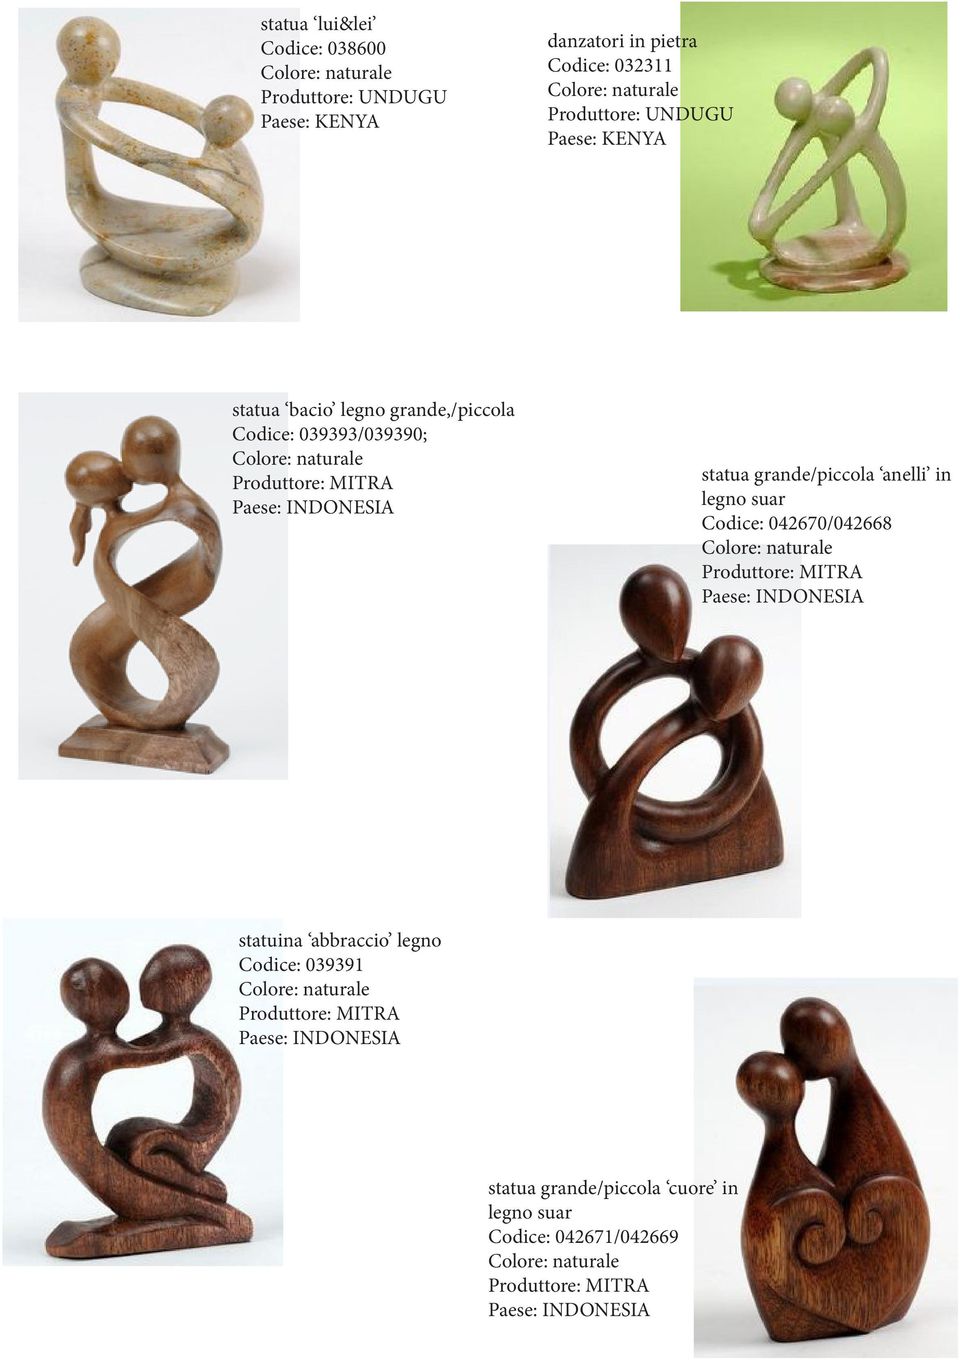 MITRA statua grande/piccola anelli in legno suar Codice: 042670/042668 Produttore: MITRA statuina